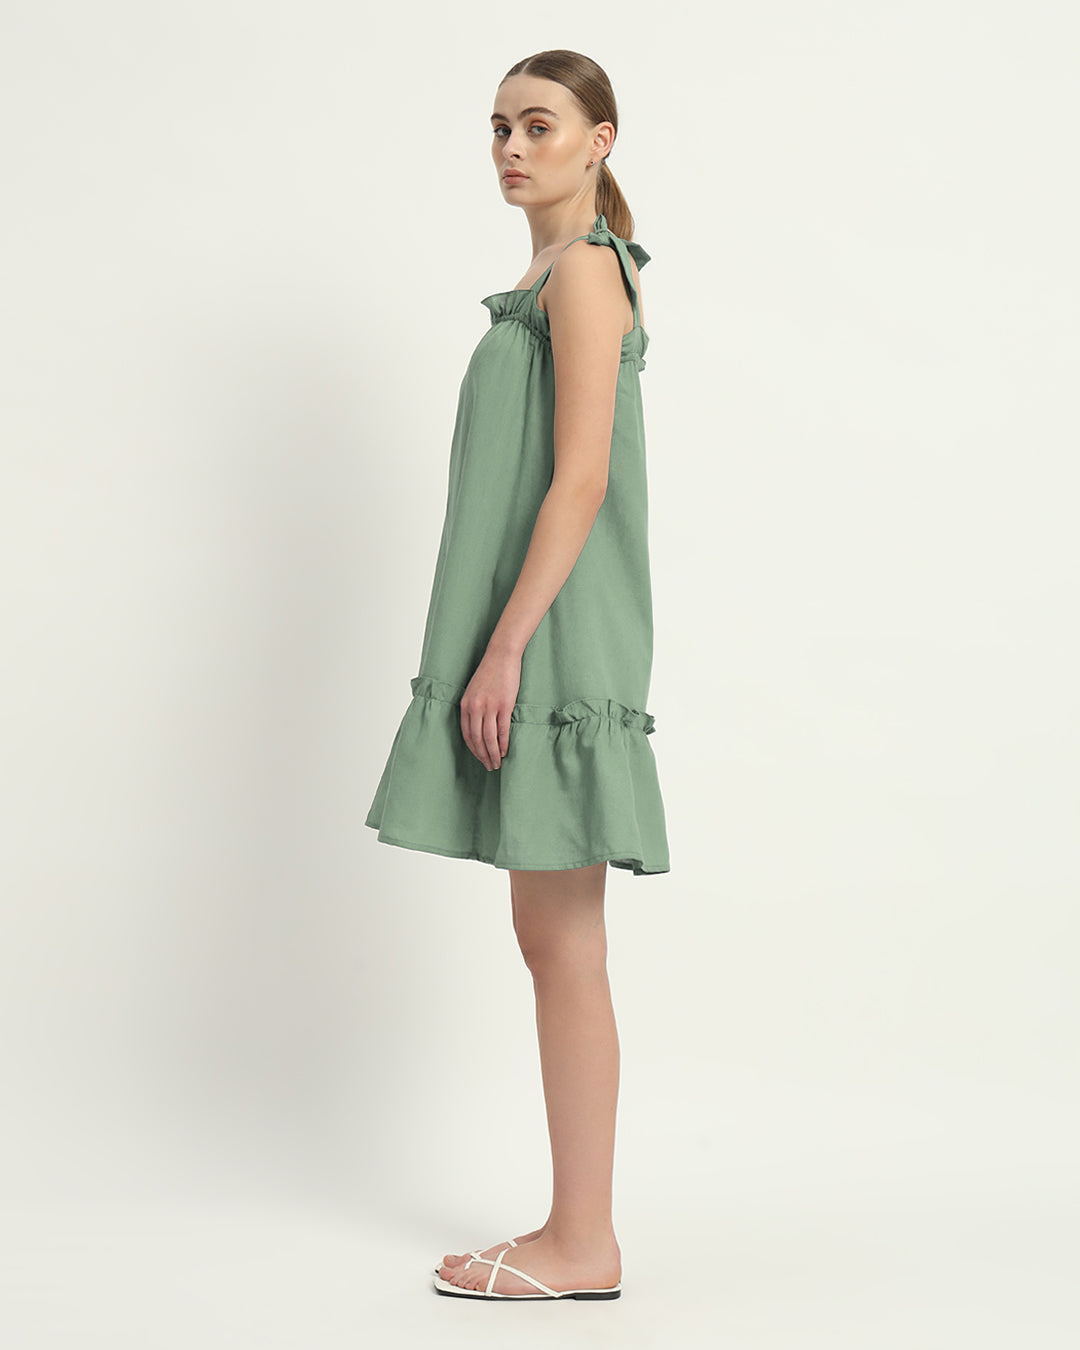 The Mint Amalfi Cotton Dress